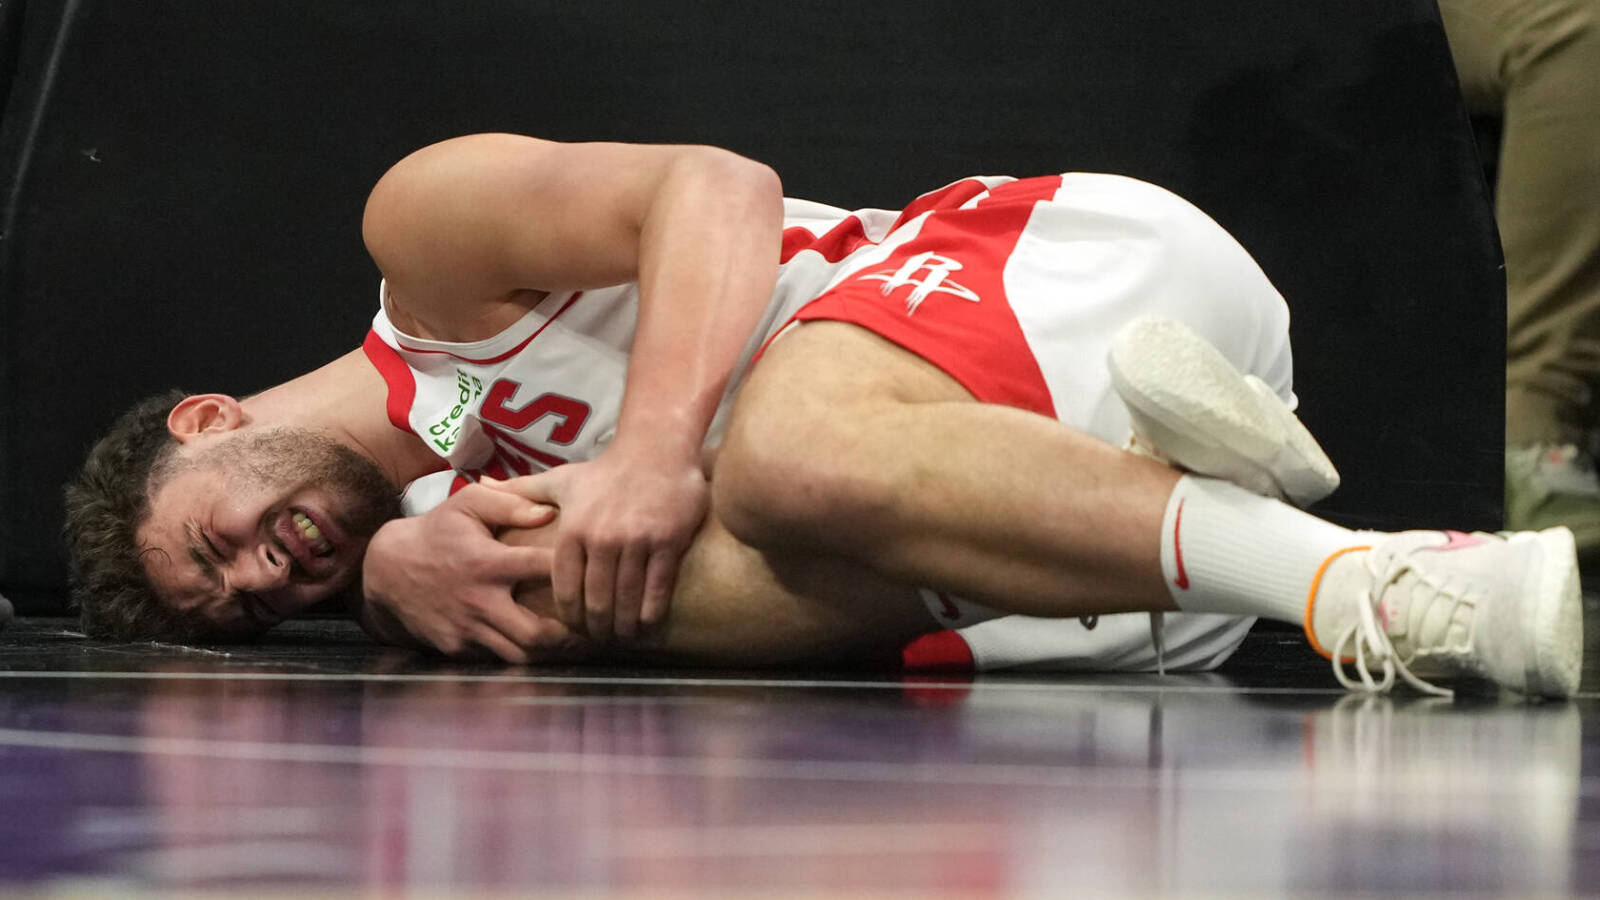 The Rockets' postseason dreams suffer a major blow